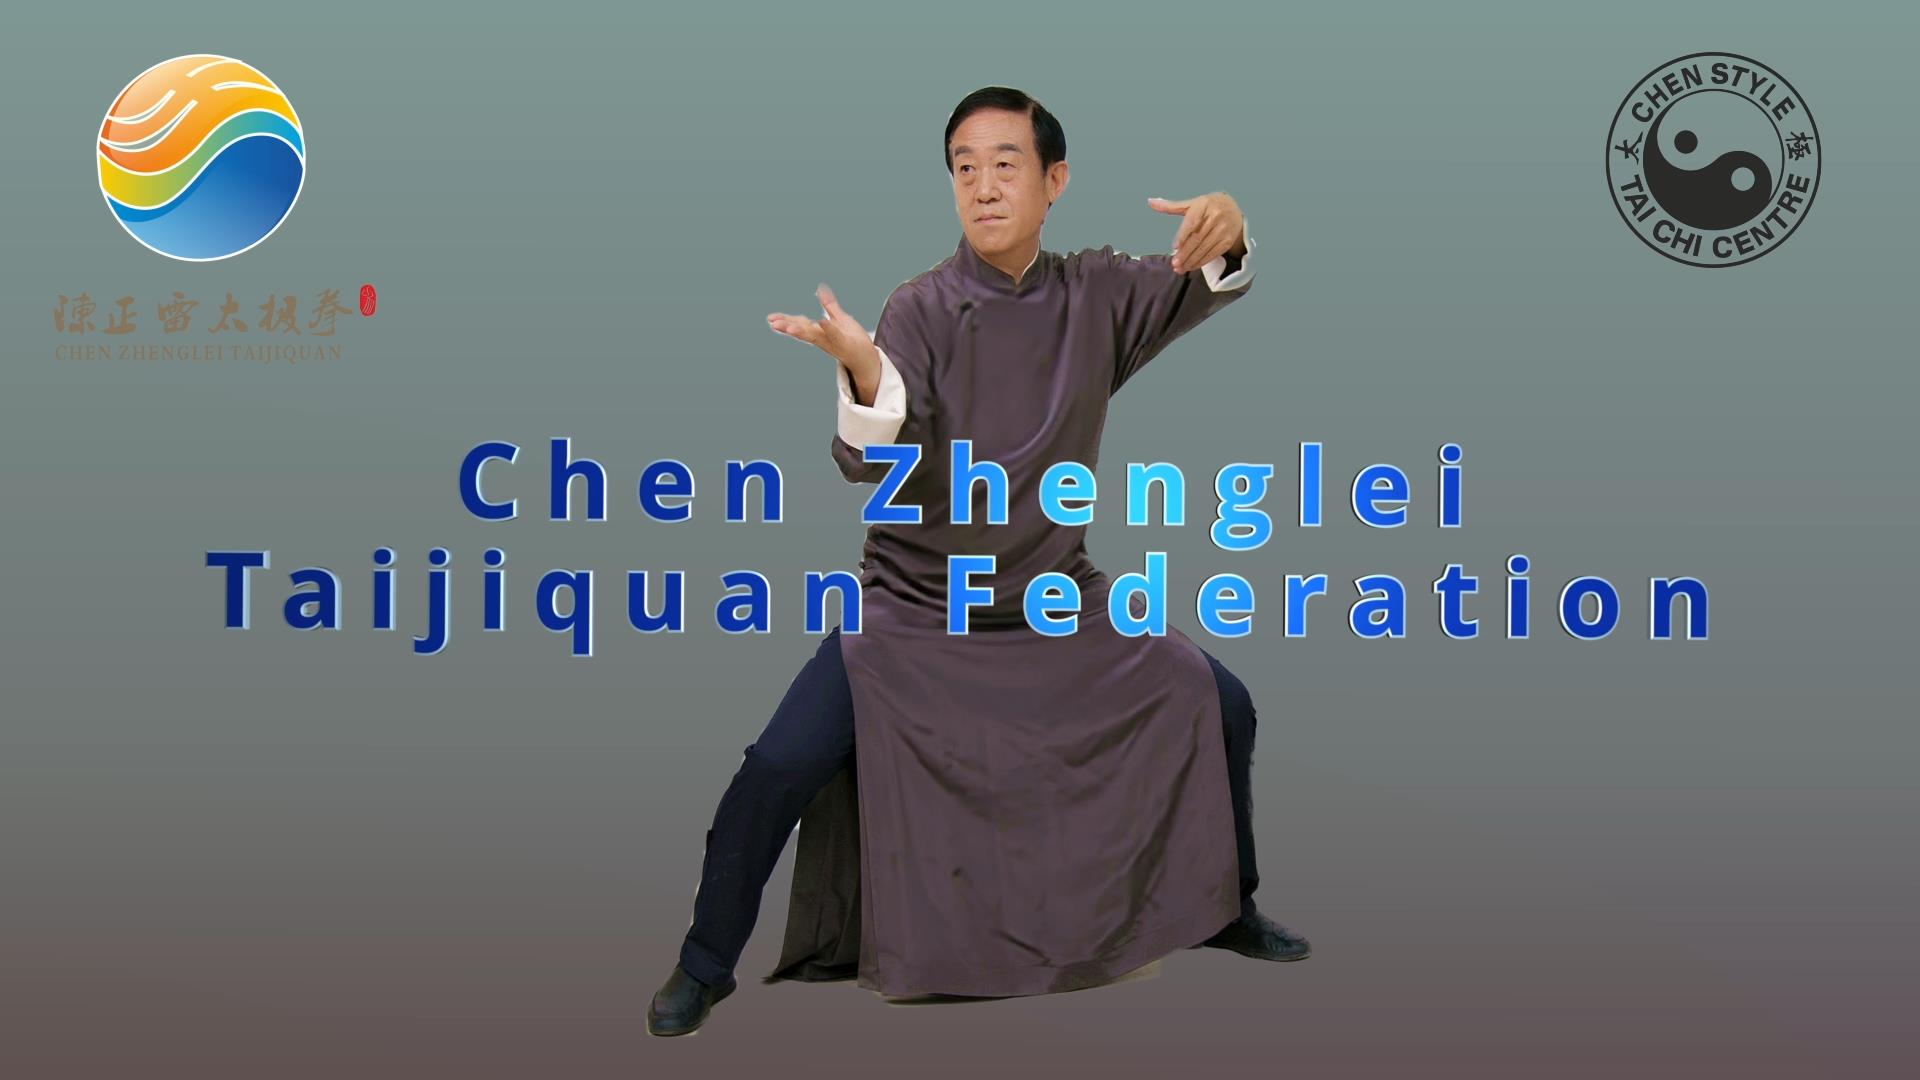 Chen Zhenglei Ltd. – Chen Zhenglei Taijiquan Federation